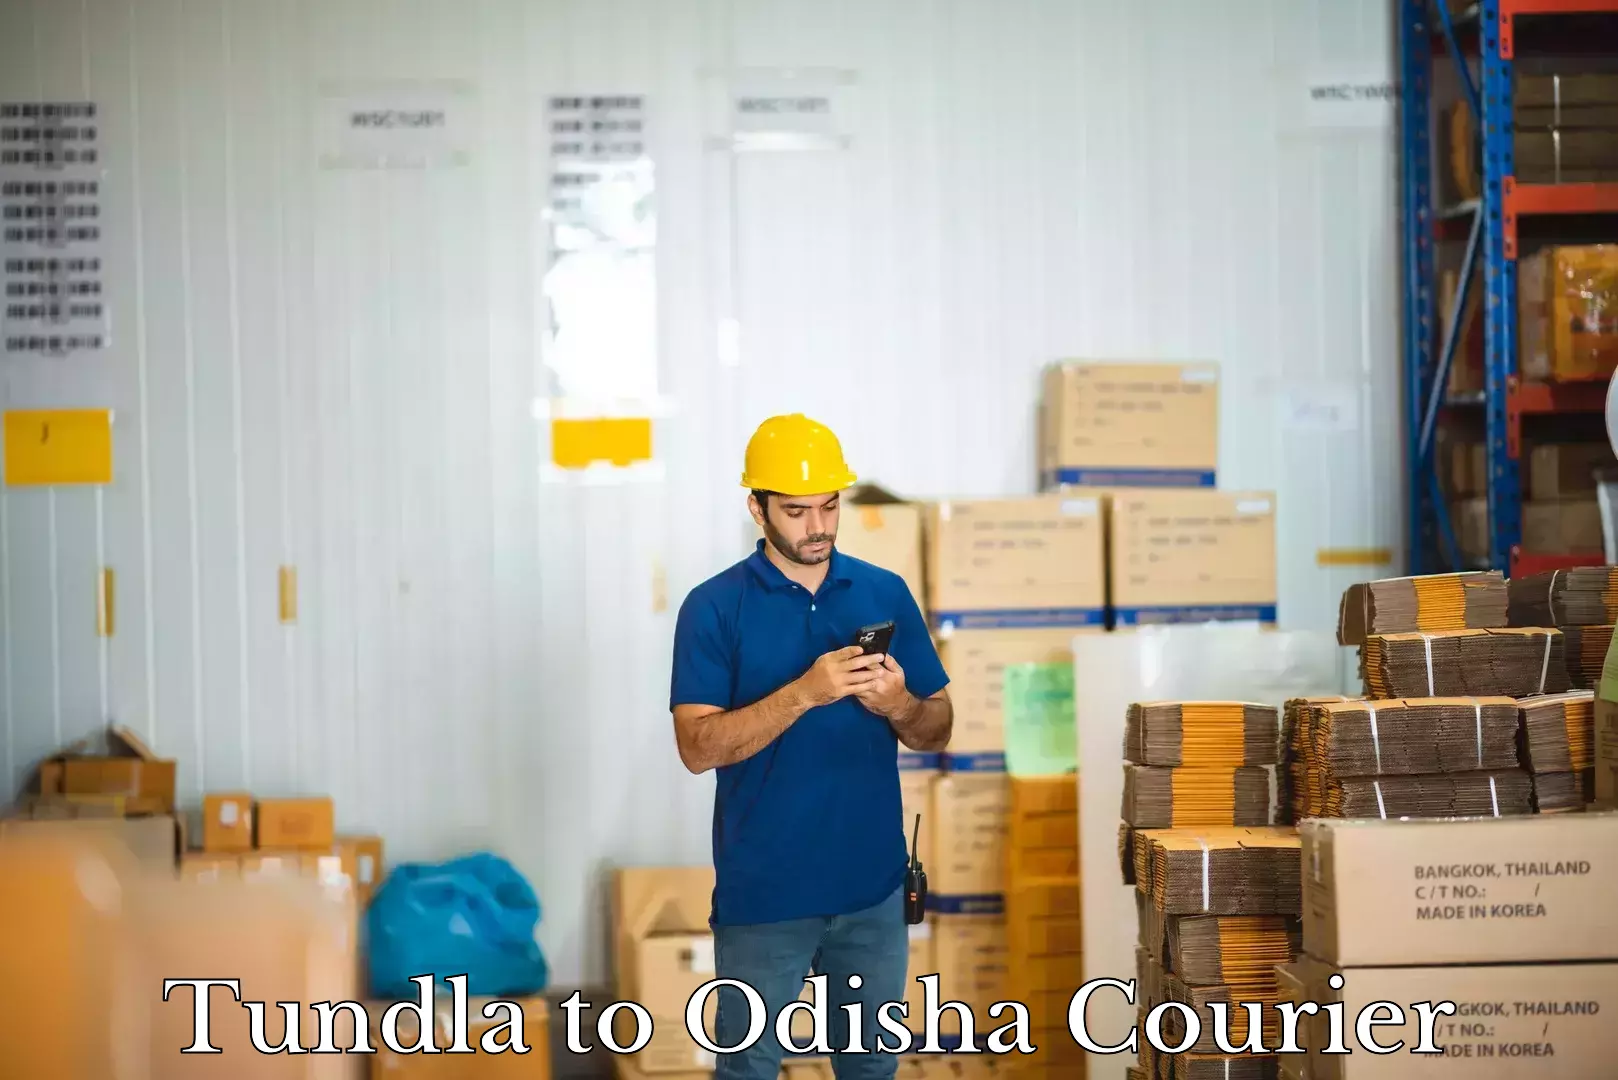 Hassle-free luggage shipping Tundla to Sundergarh